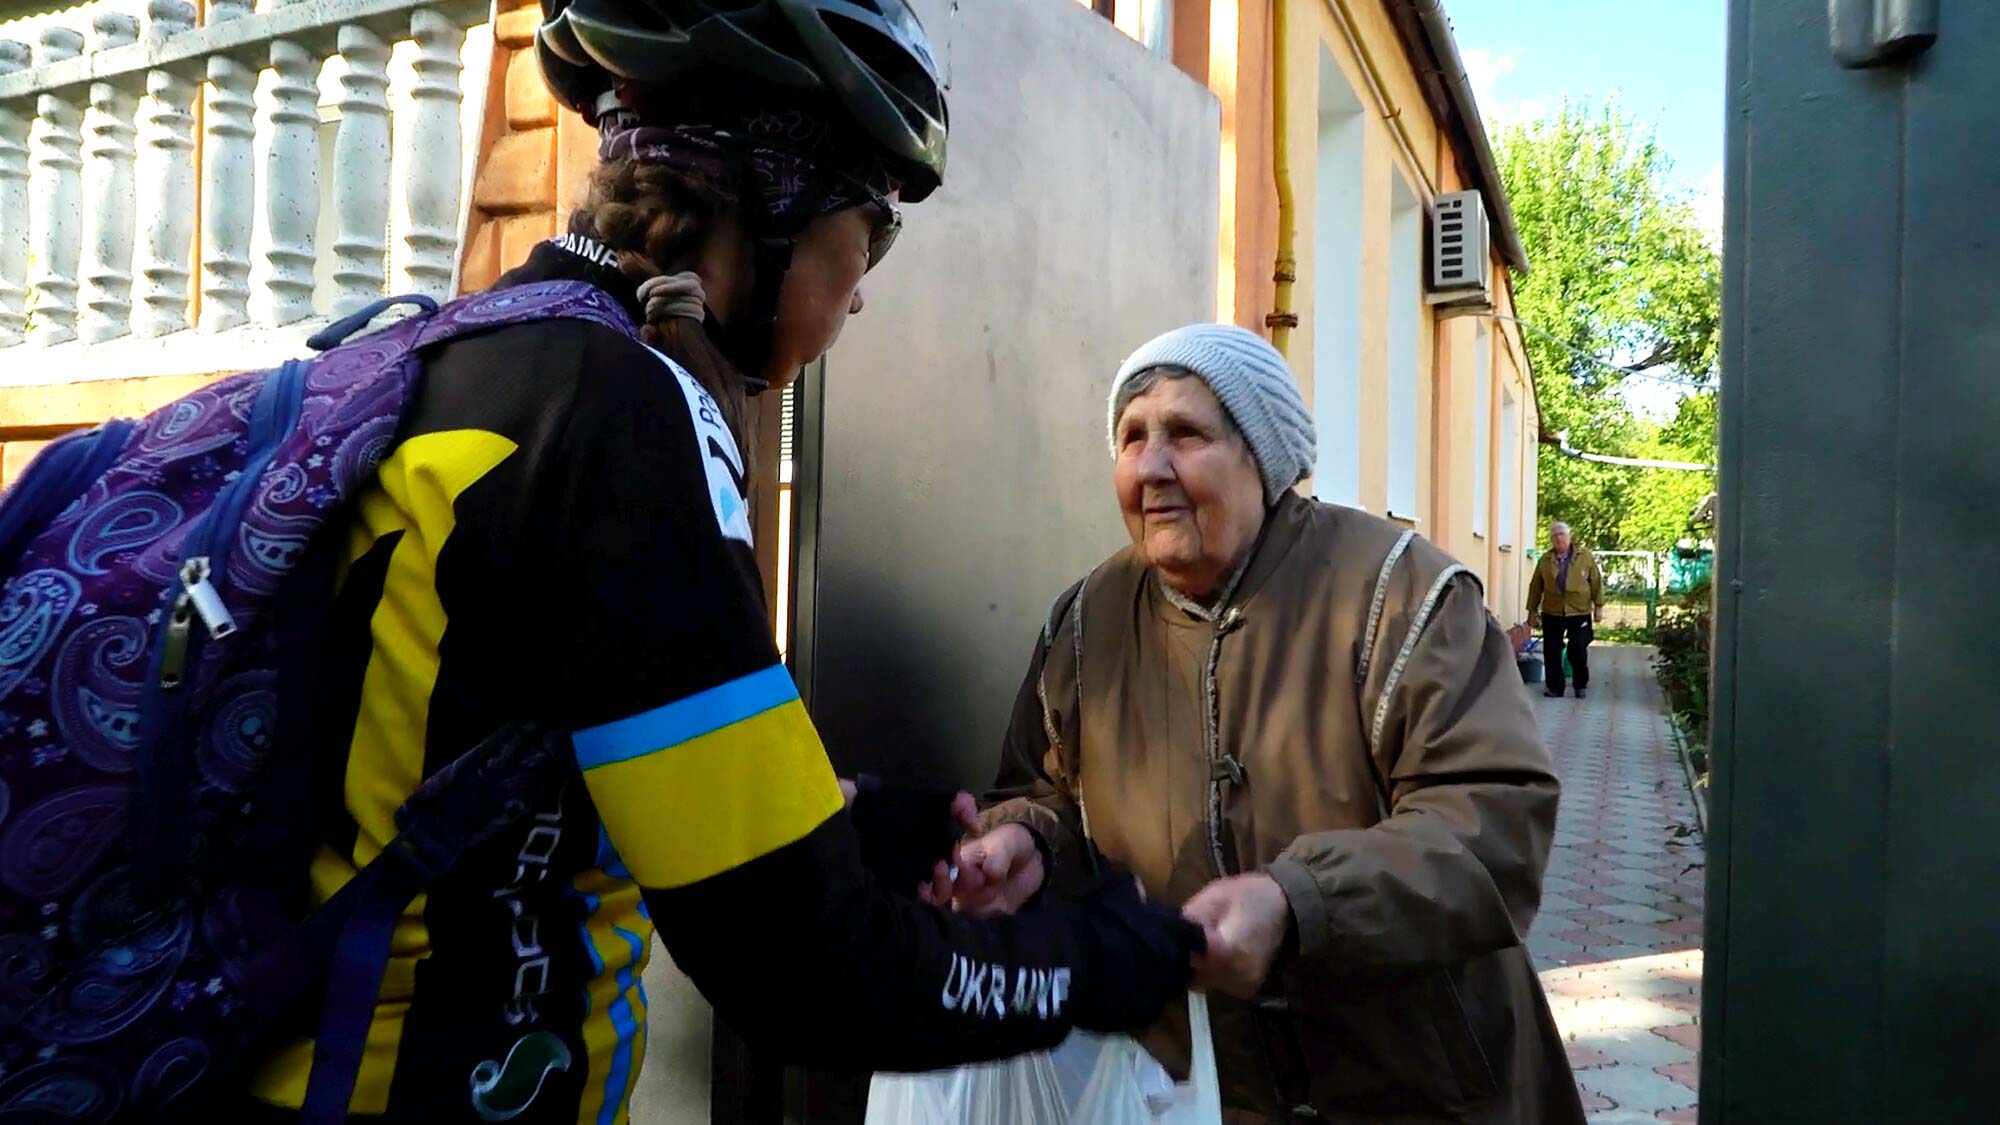 Depaul team member handing over supplies to Ukrainian woman